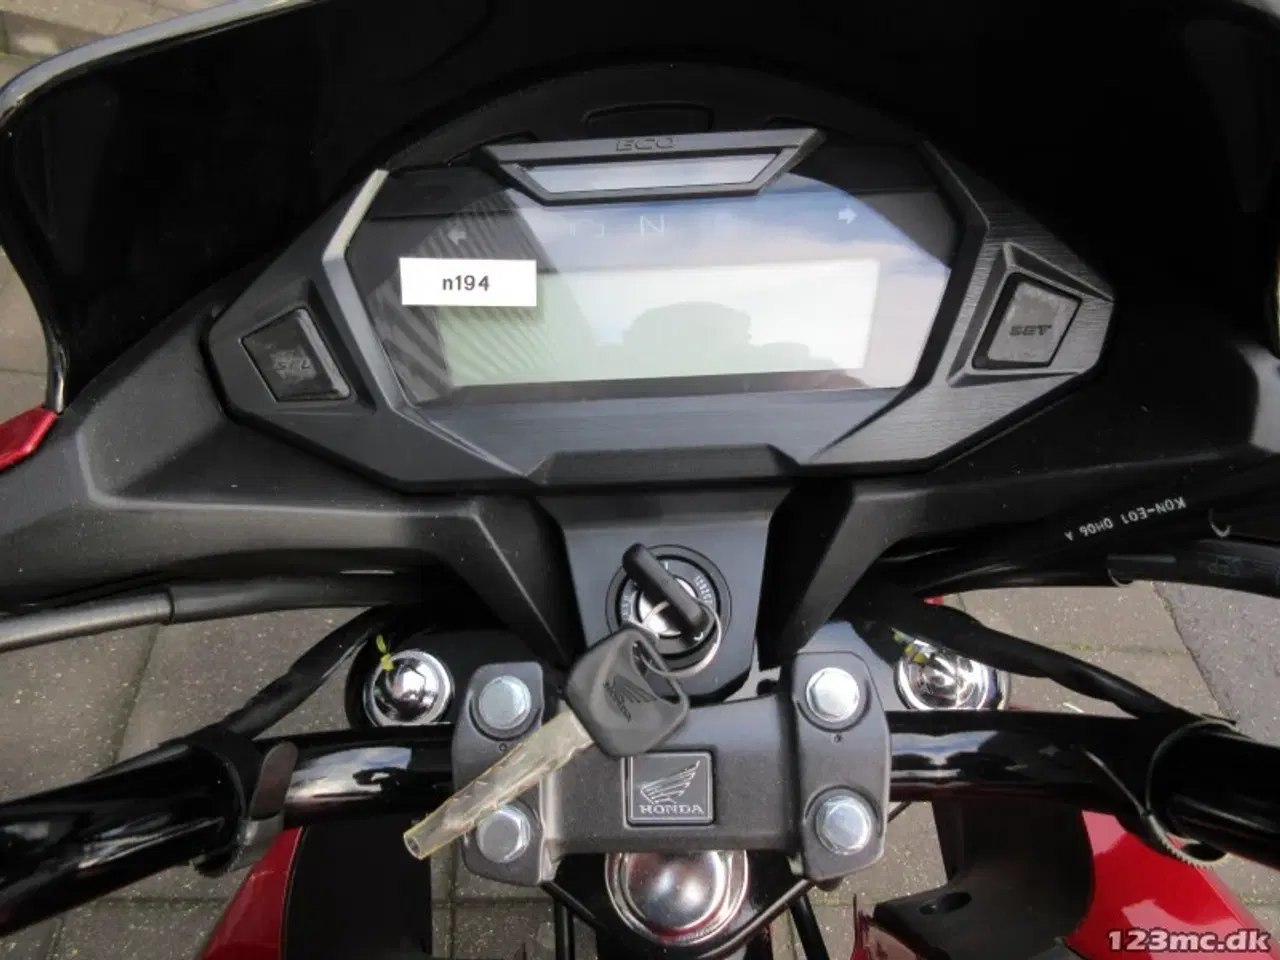 Billede 19 - Honda CBF 125 MC-SYD BYTTER GERNE